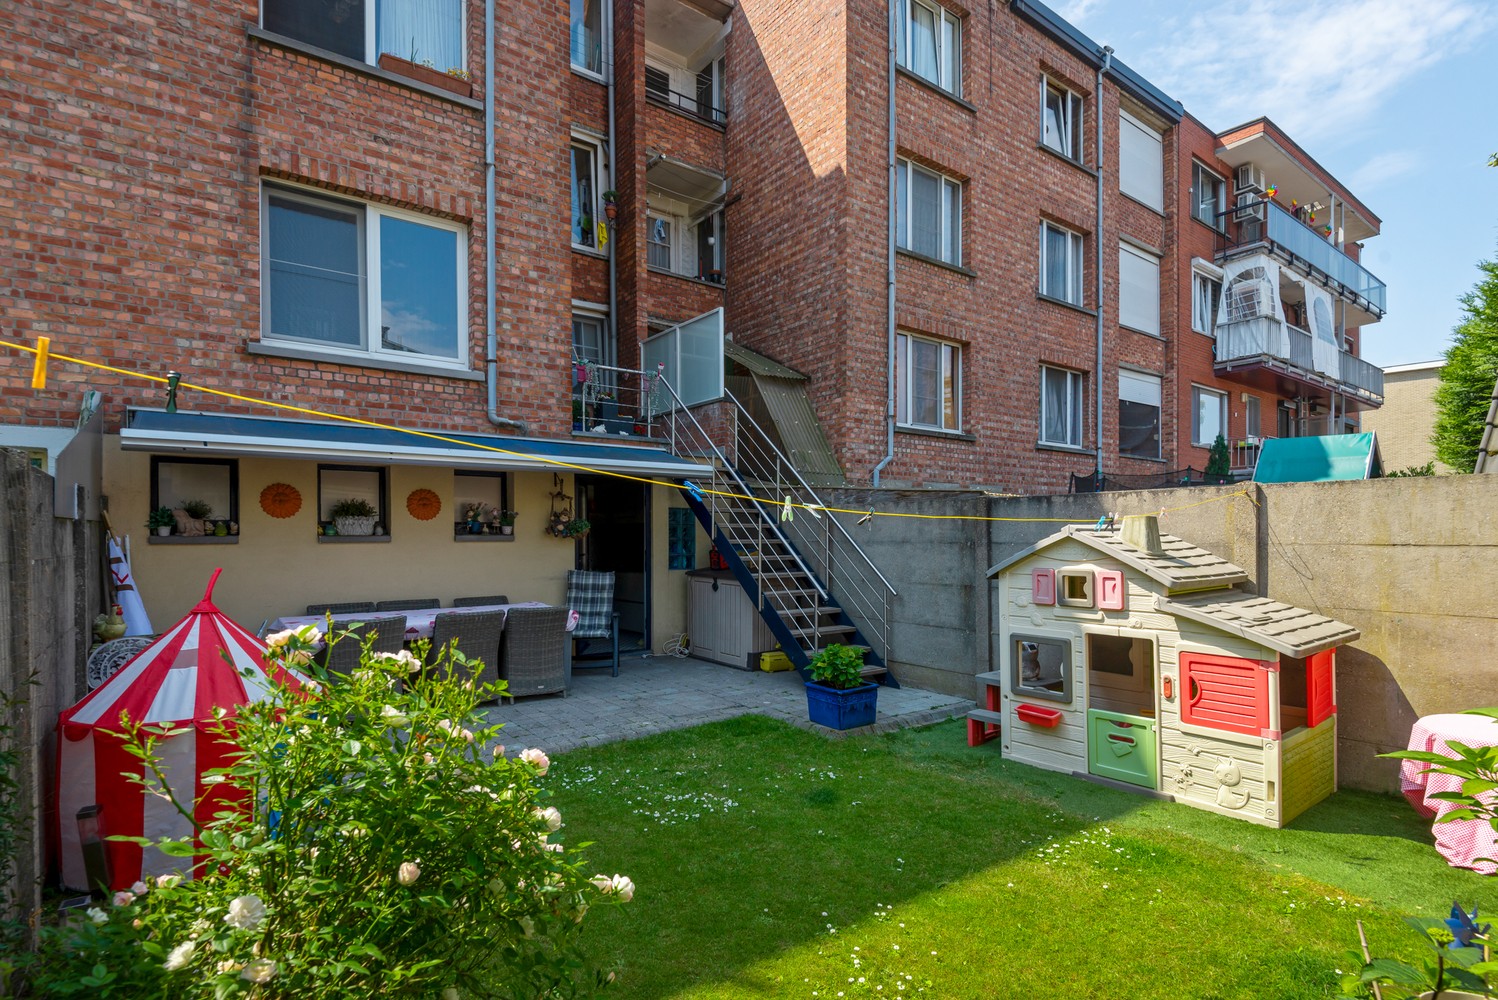 Appartement met tuin, terras en twee slaapkamers te koop in Deurne! afbeelding 1